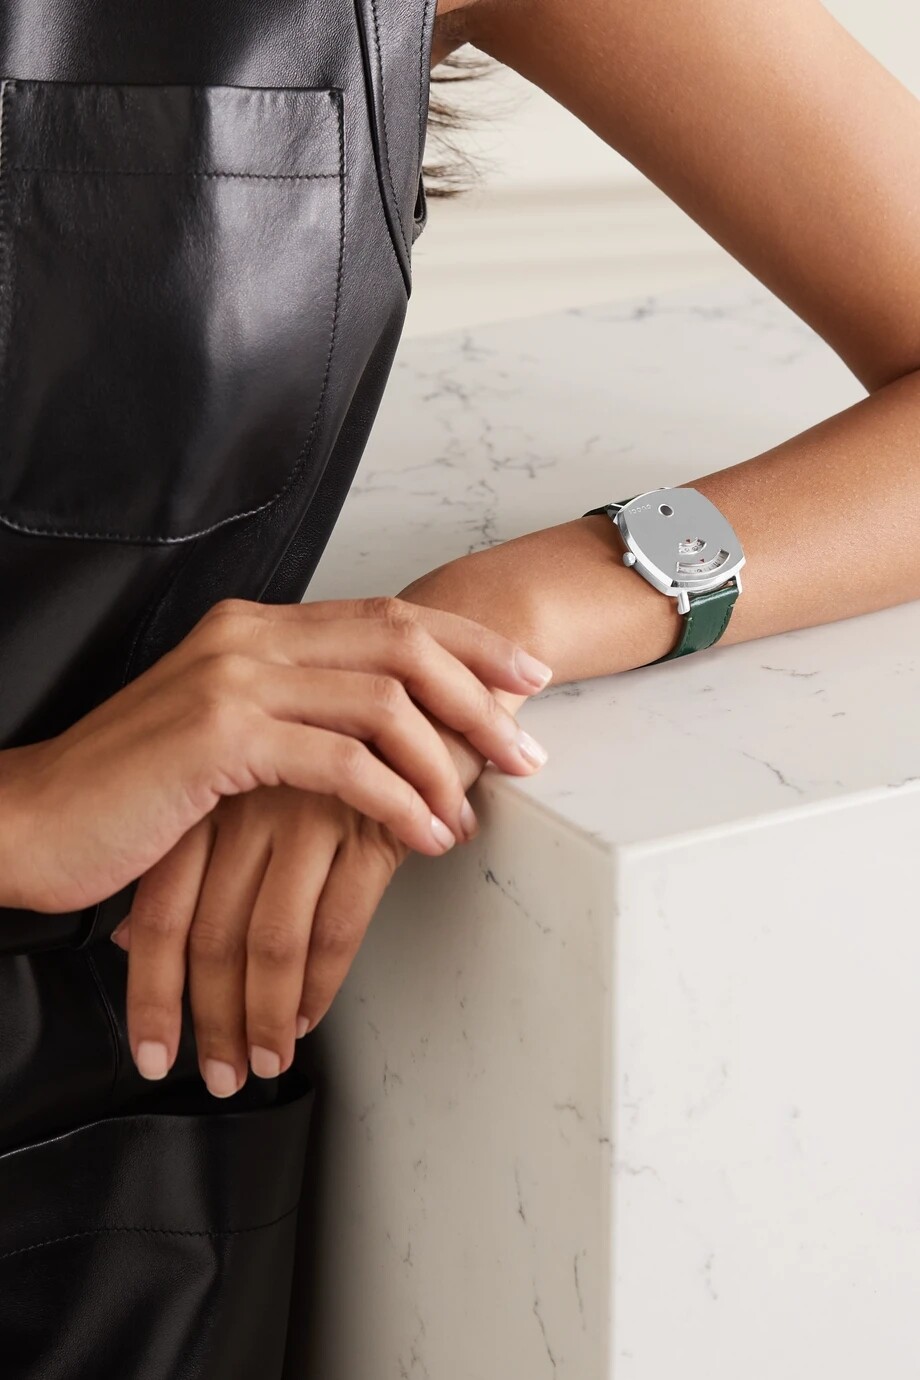 15款時裝品牌腕錶精選丨Gucci、Hermès、LV及Fendi腕錶是手袋以外最值得投資的